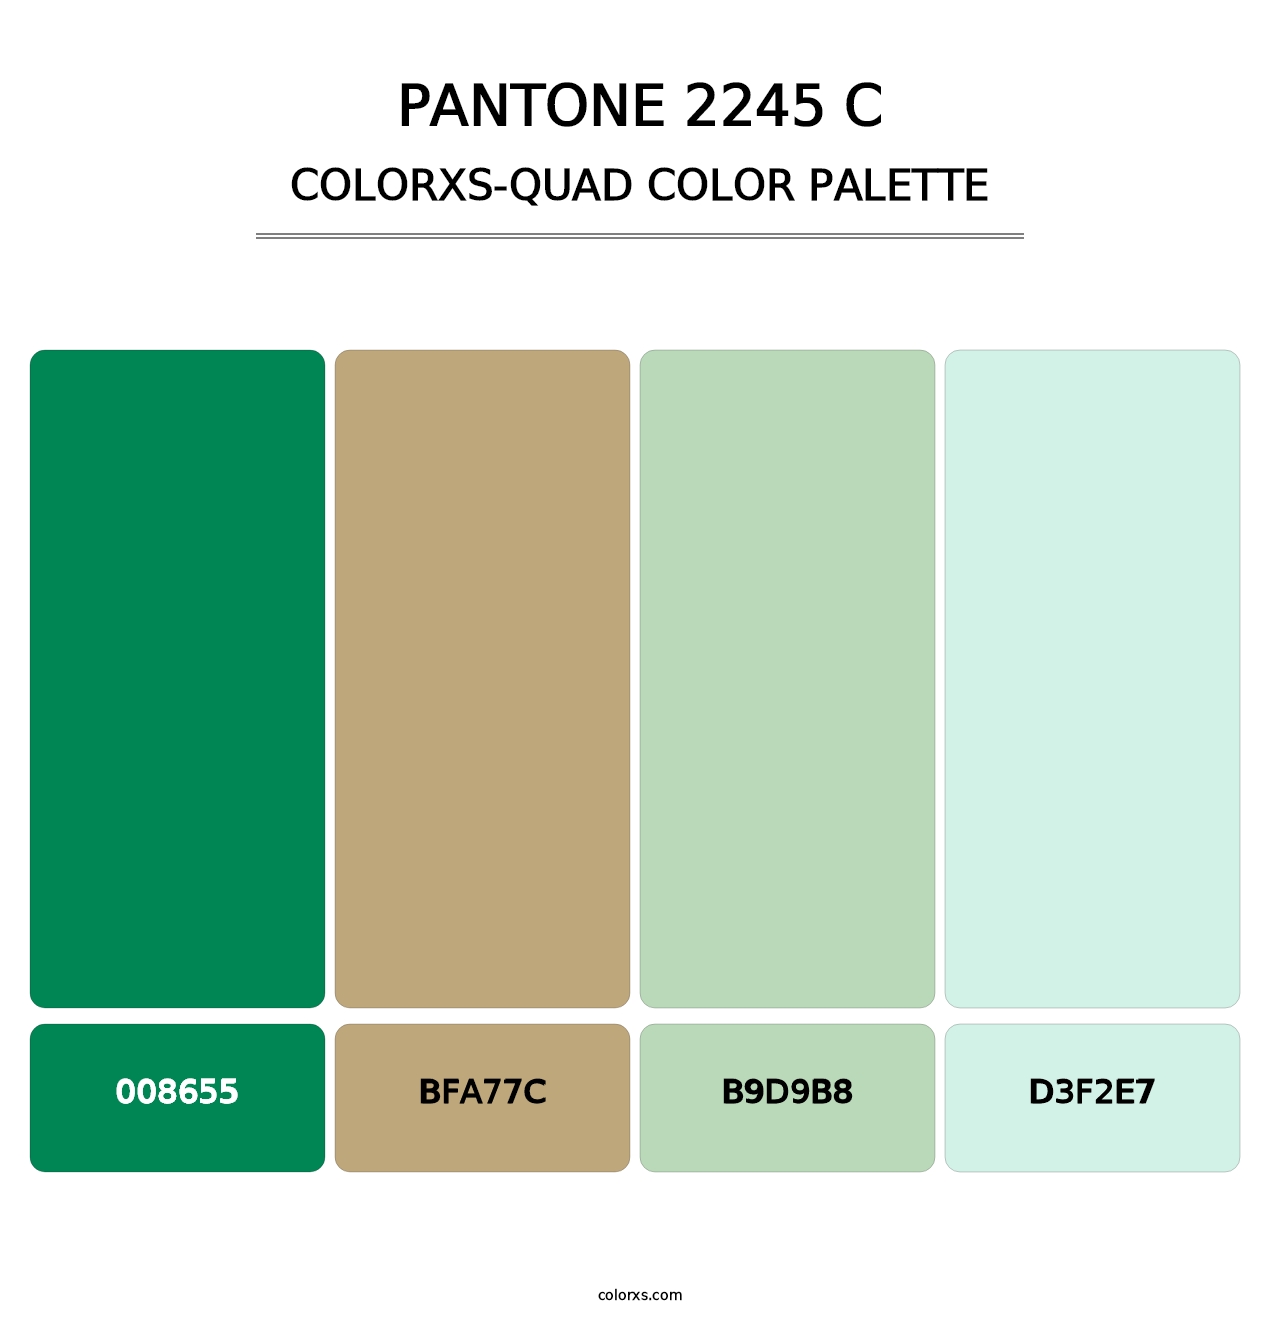 PANTONE 2245 C - Colorxs Quad Palette